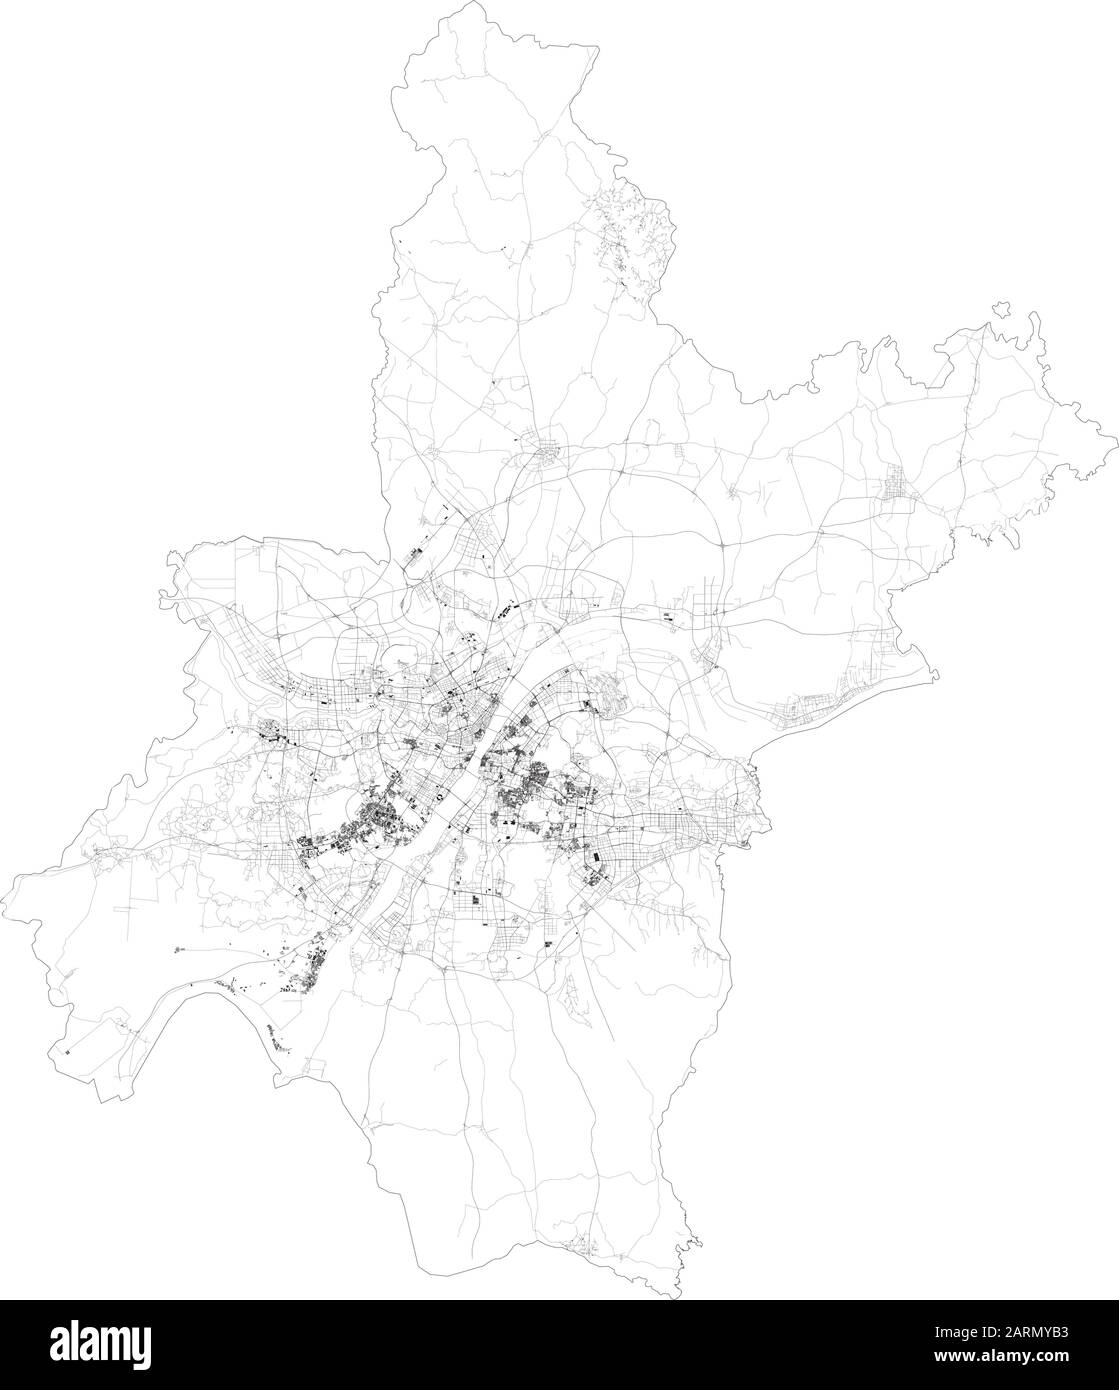 Satellitenkarte von Wuhan, Jiang an District, Hubei, China Städte und Straßen, Gebäude und Verbindungsstraßen. Karte. Coronavirus Stock Vektor